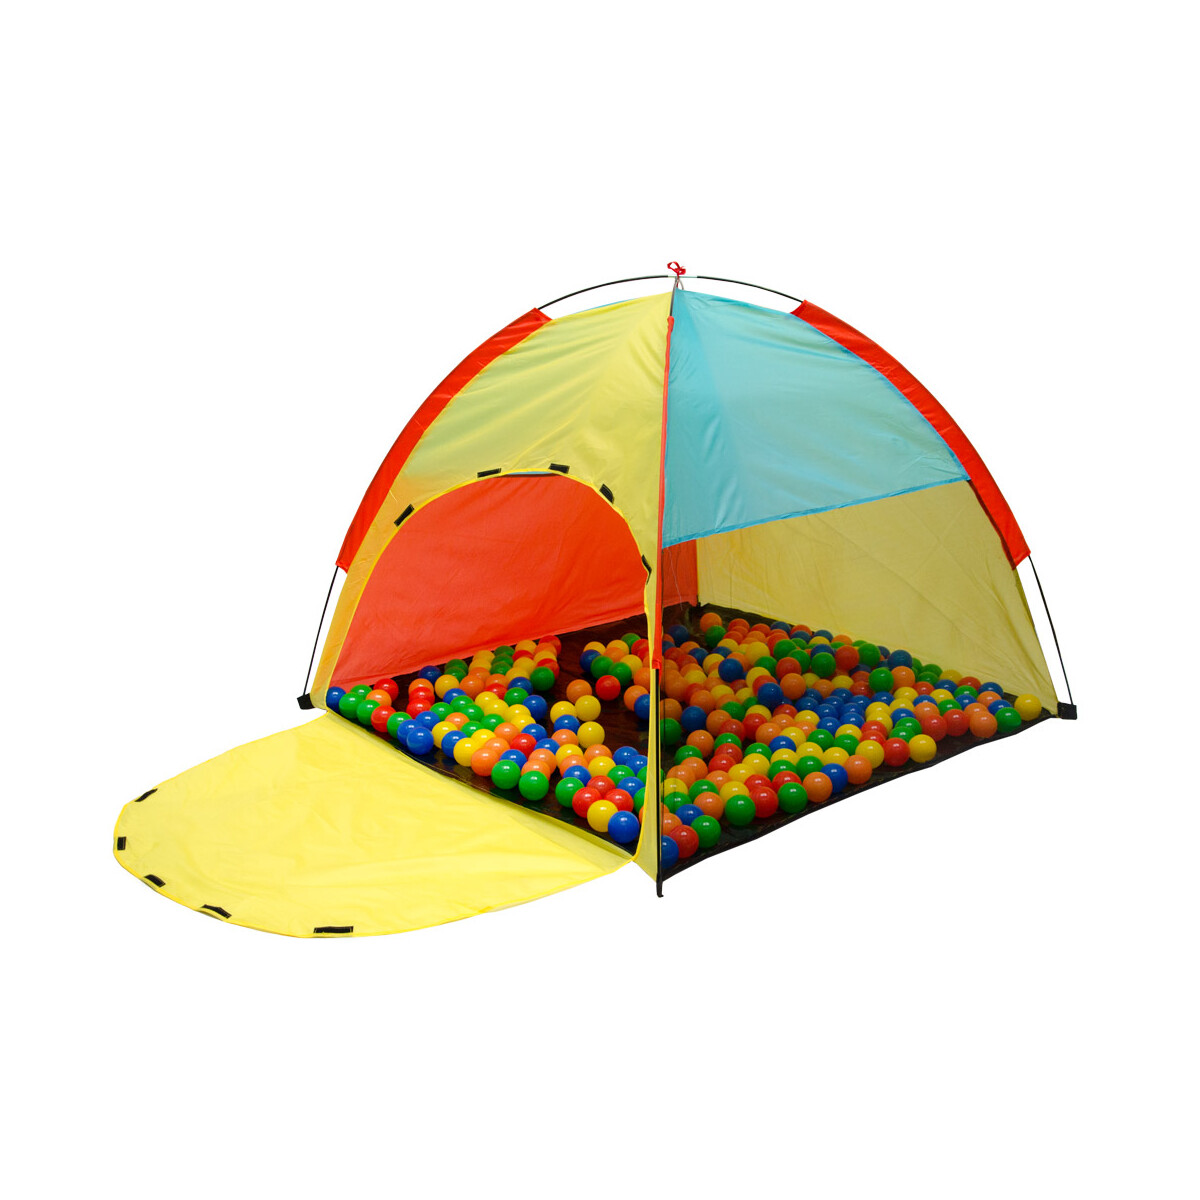 Spielzelt Kinderzelt FABIUS | Bällebad Zelt für...